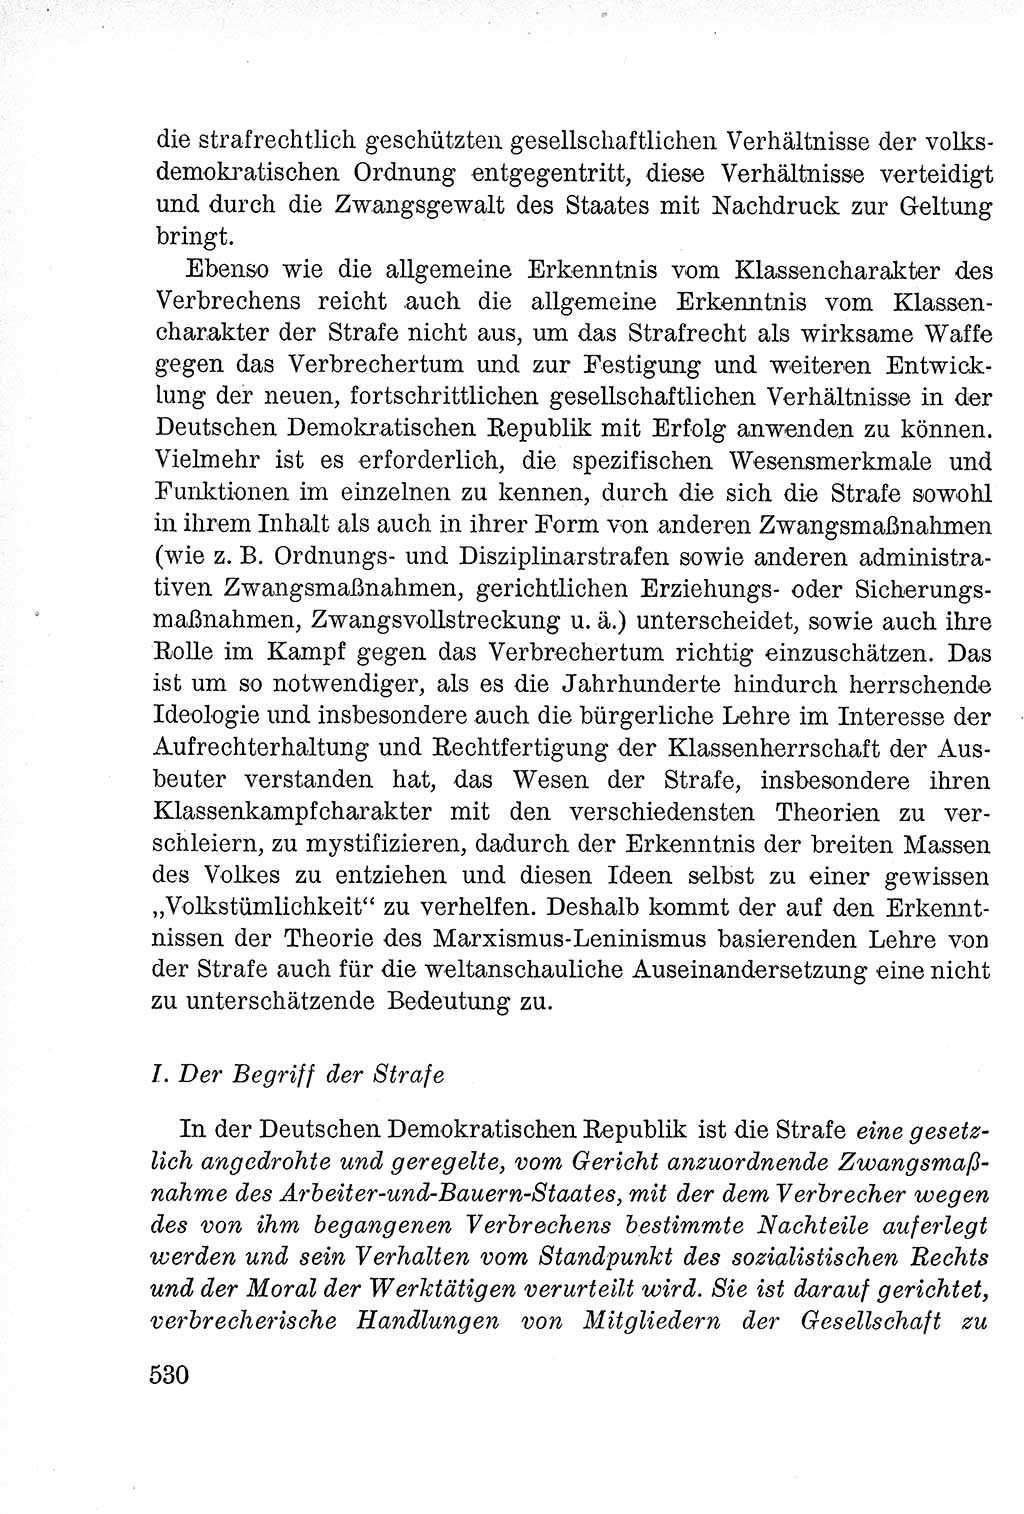 Lehrbuch des Strafrechts der Deutschen Demokratischen Republik (DDR), Allgemeiner Teil 1957, Seite 530 (Lb. Strafr. DDR AT 1957, S. 530)